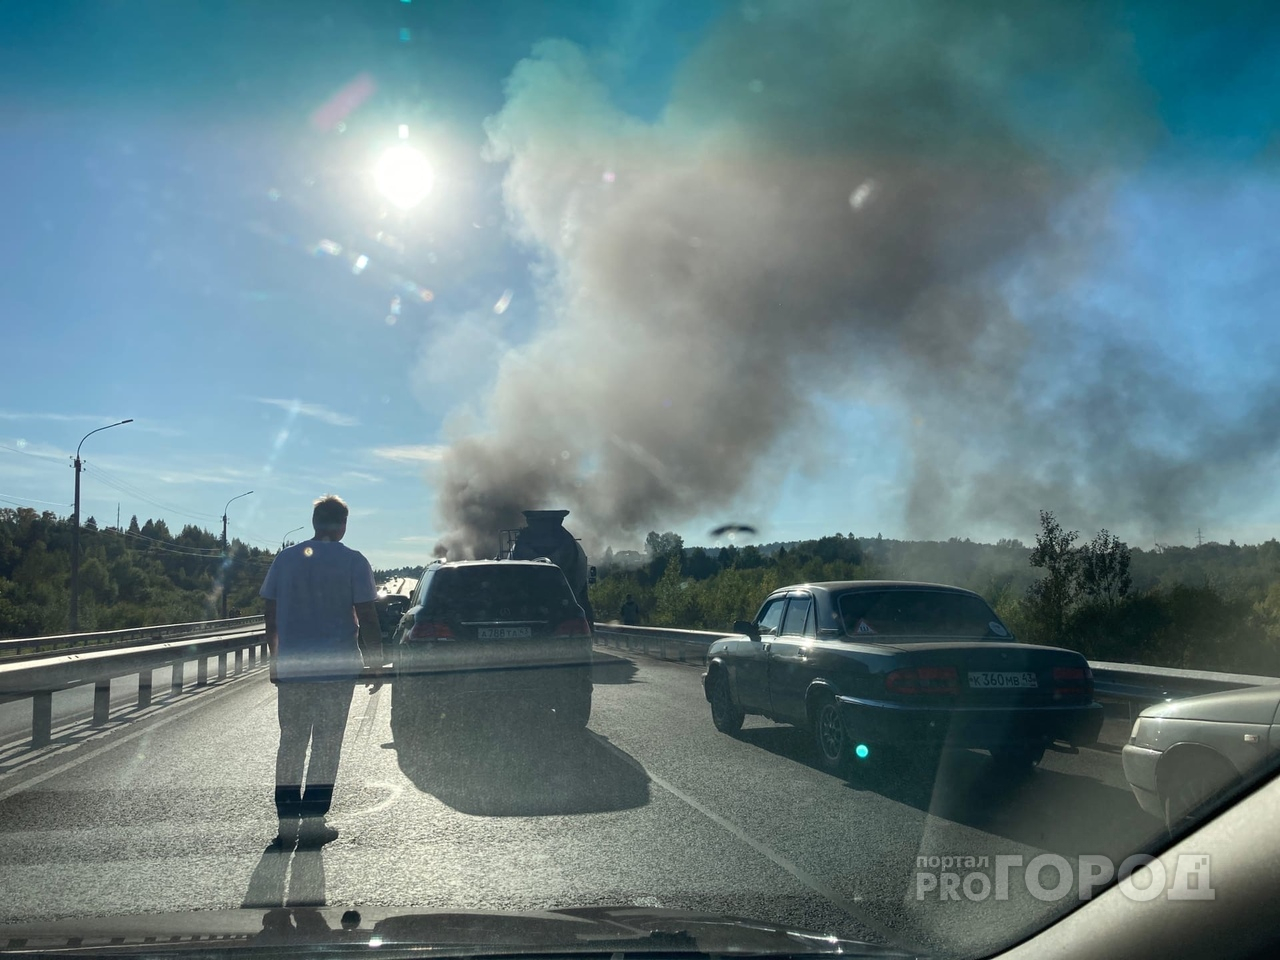 "Бушует огонь, очевидцы в панике": на новом мосту в Кирове горит машина